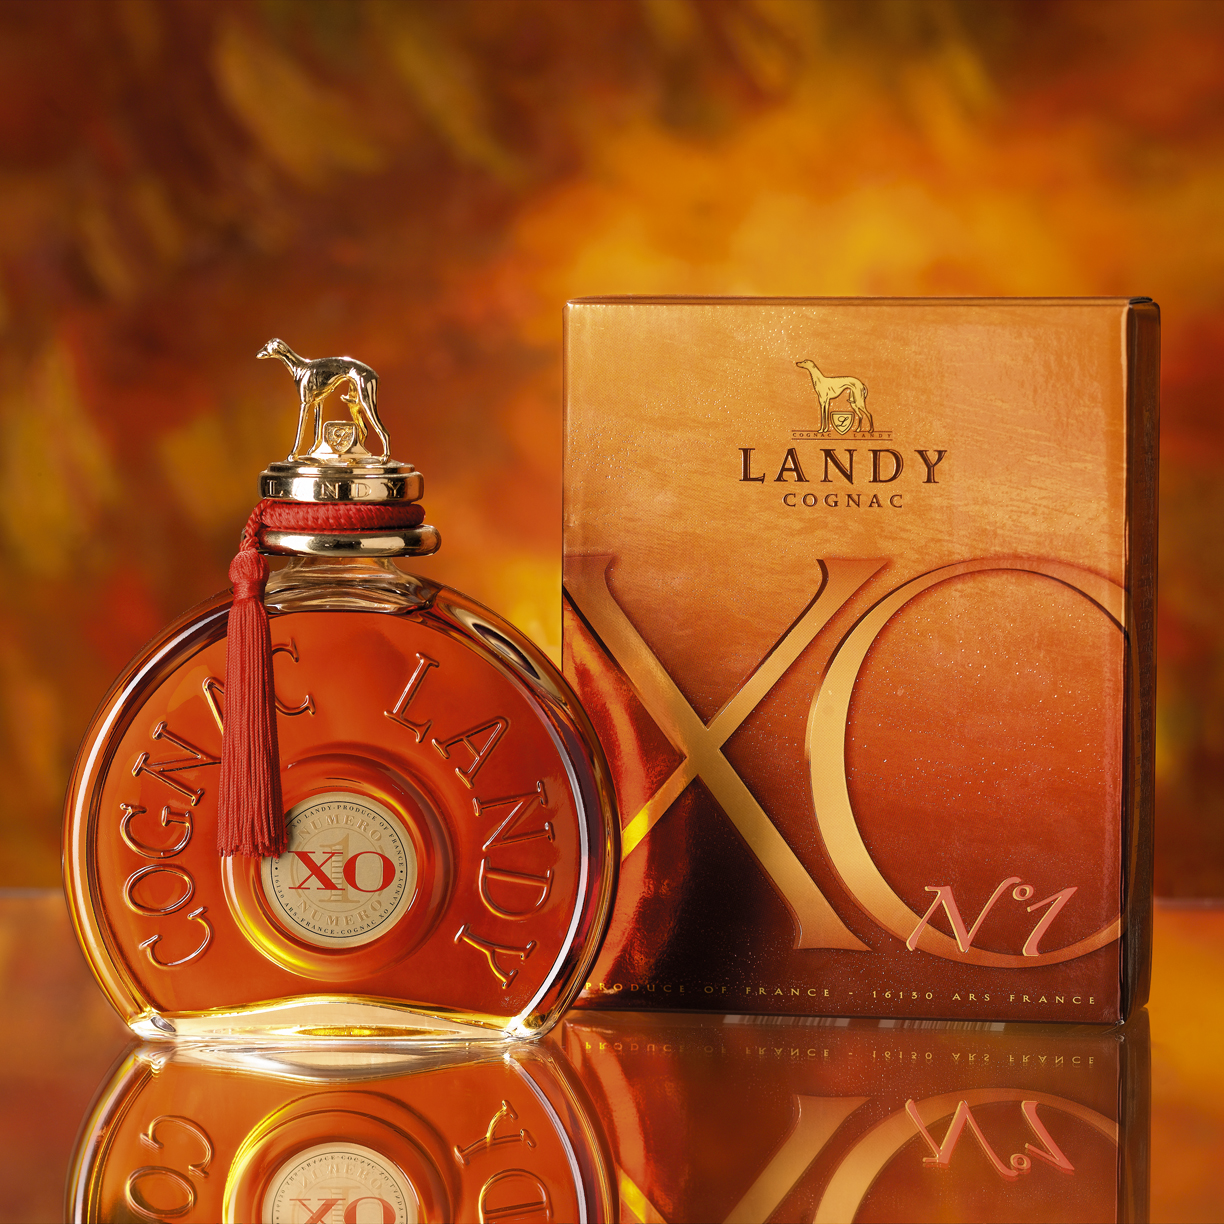 Landy Cognac